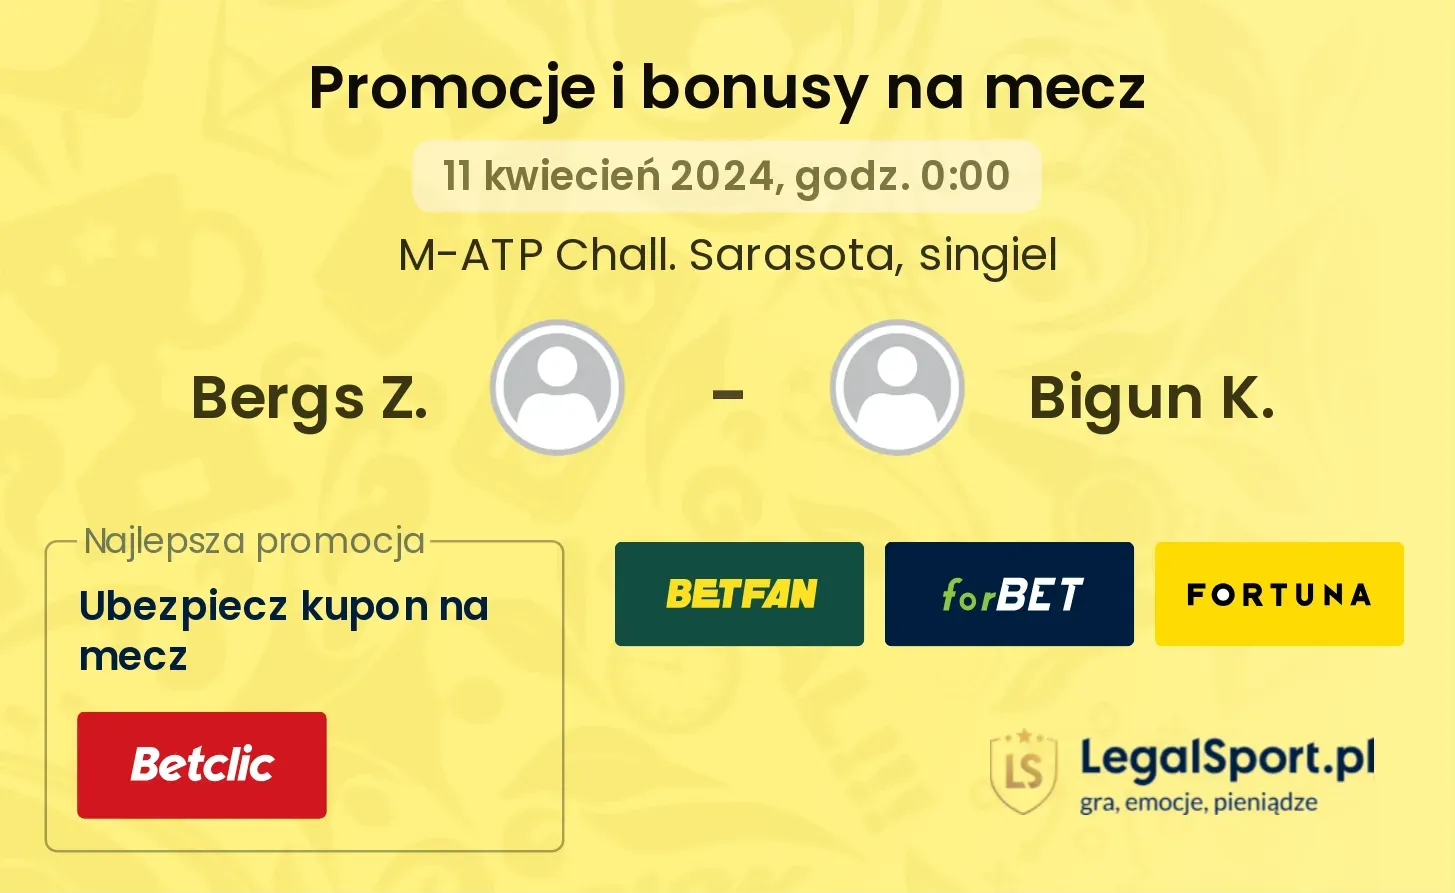 Bergs Z. - Bigun K. promocje bonusy na mecz